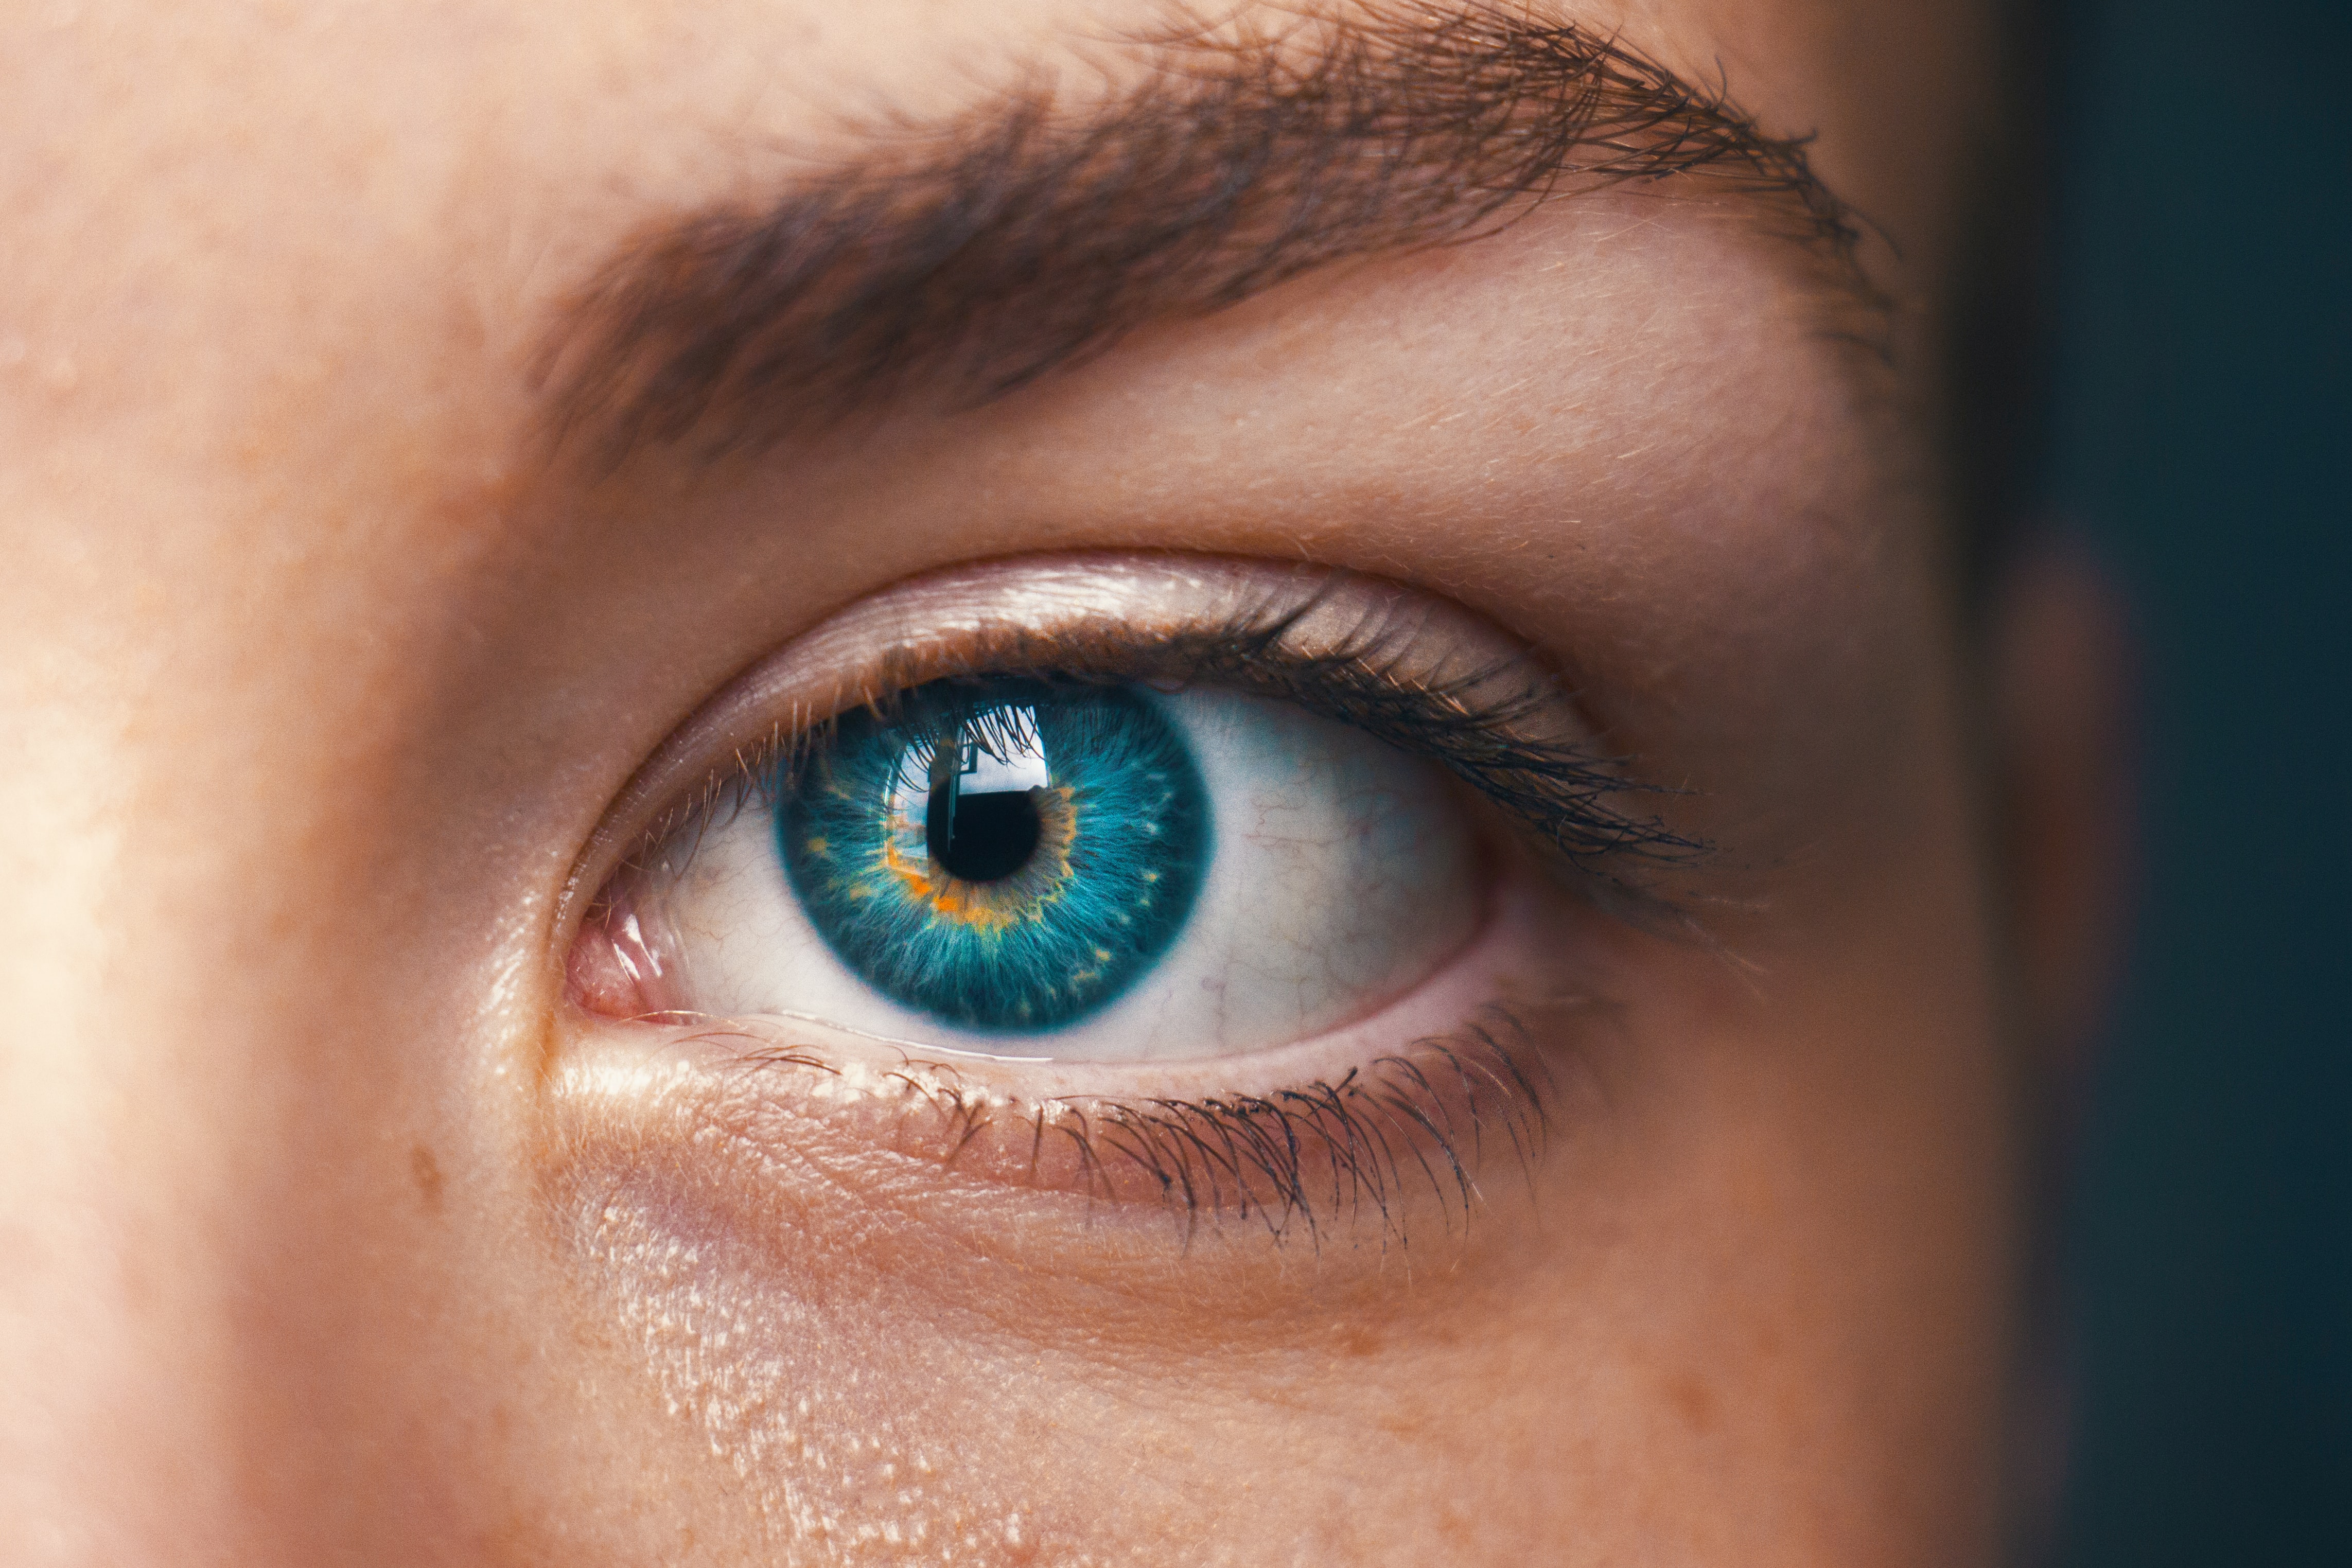 El contorno de los ojos es una de las áreas en las que más se evidencian los signos de la edad. (Foto Prensa Libre: Unsplash)